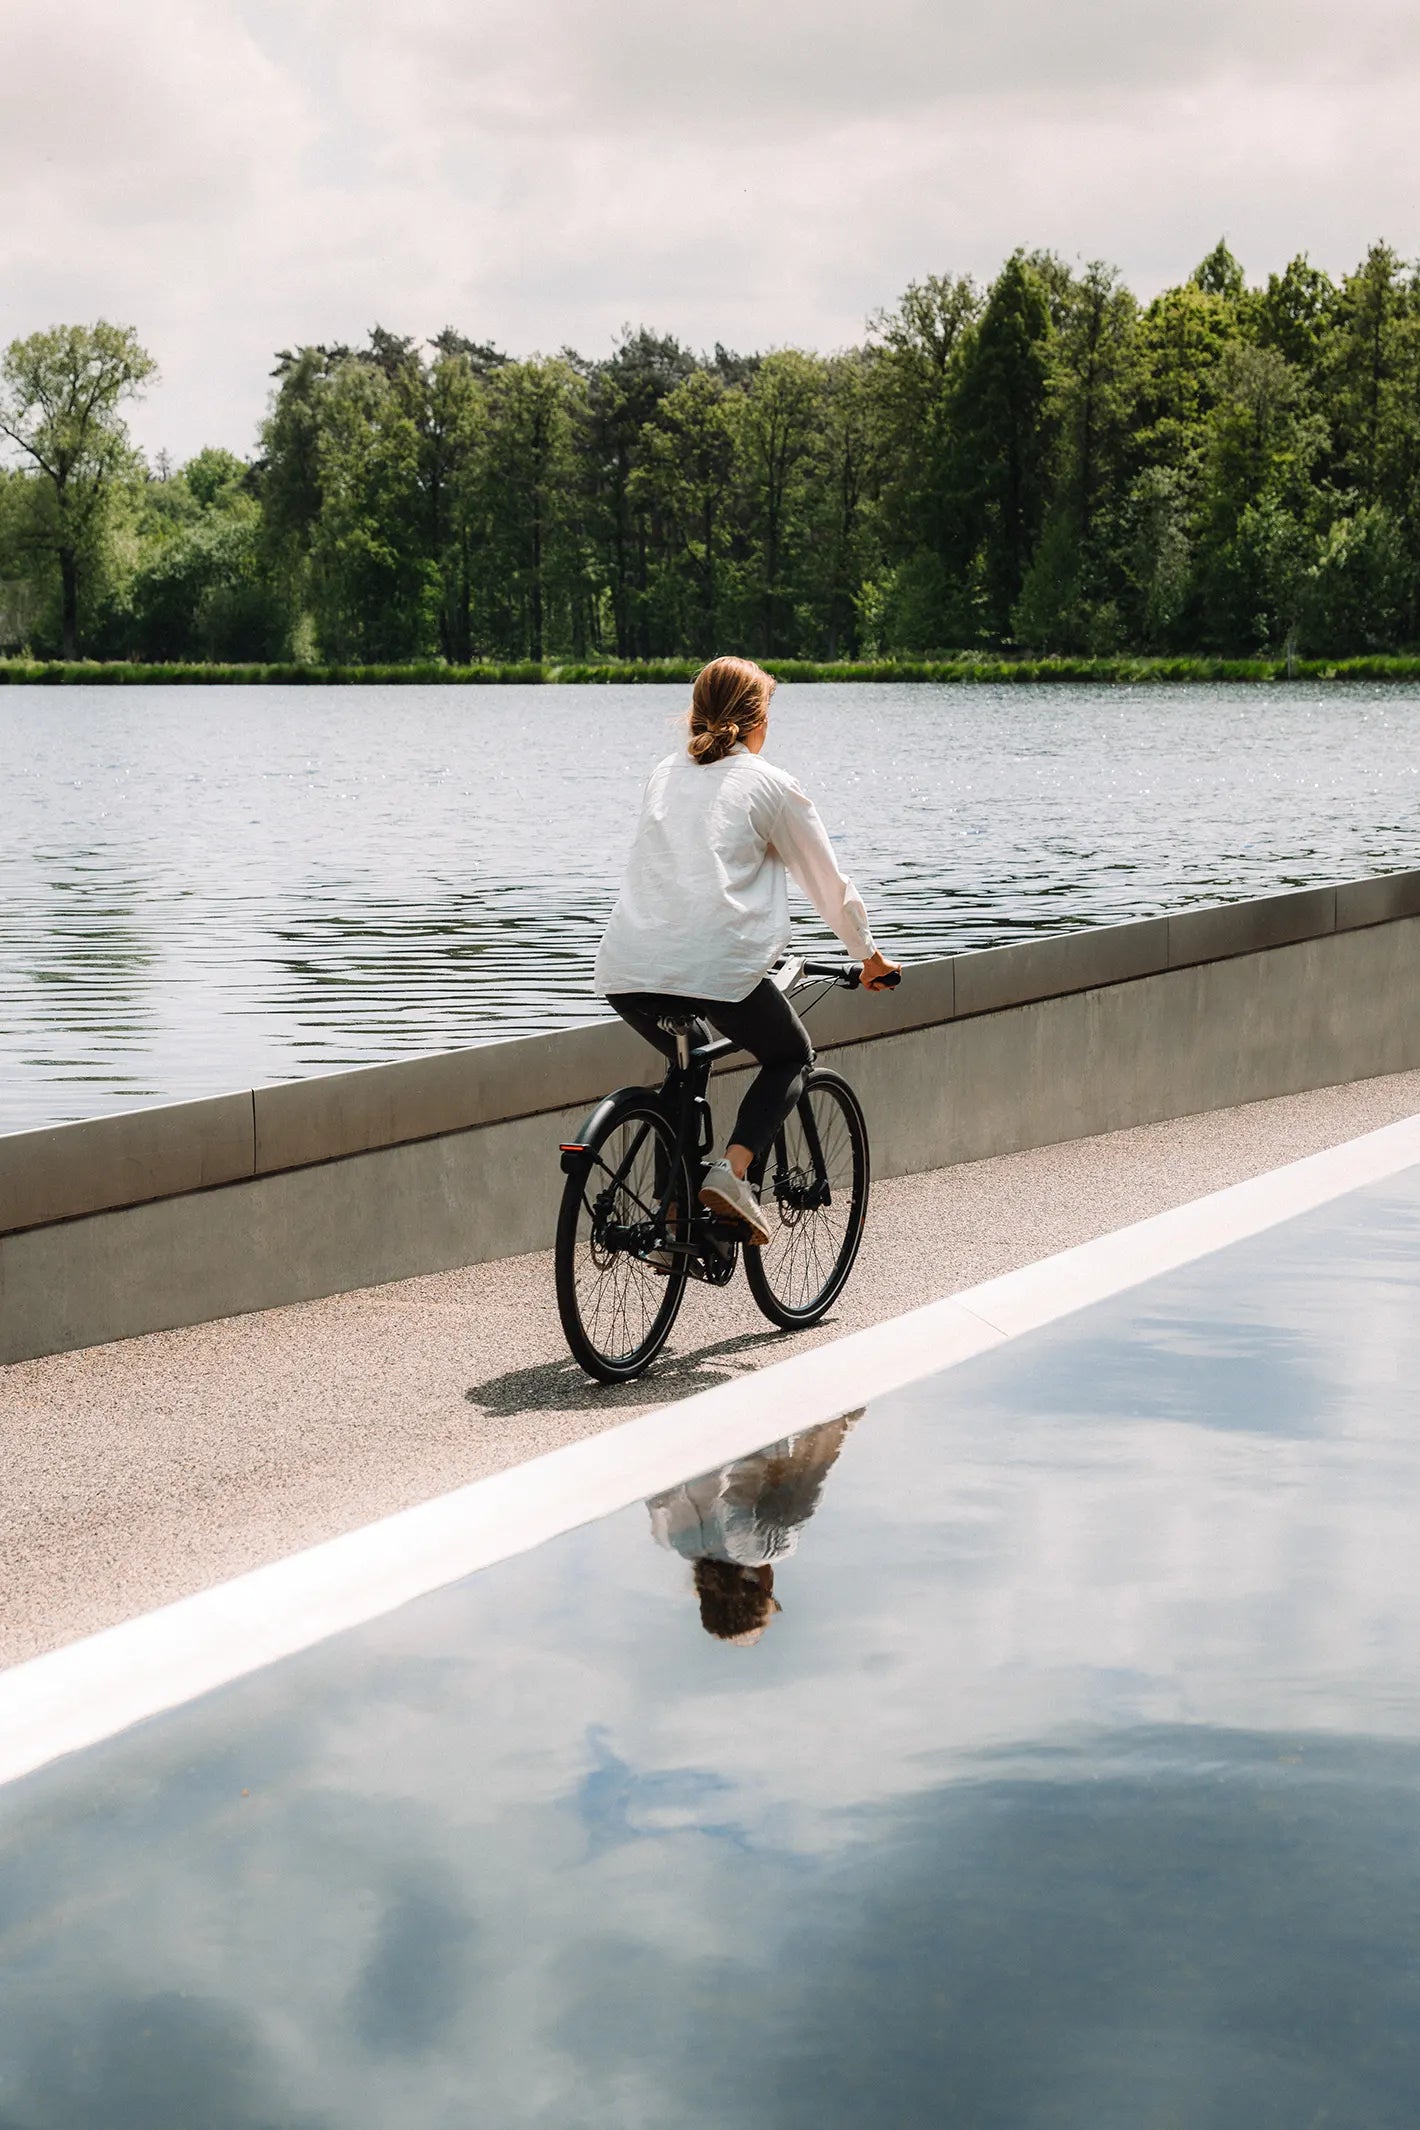 Cycliste sur son vélo Bastille, sereine en traversant un lac sur une piste cyclable.